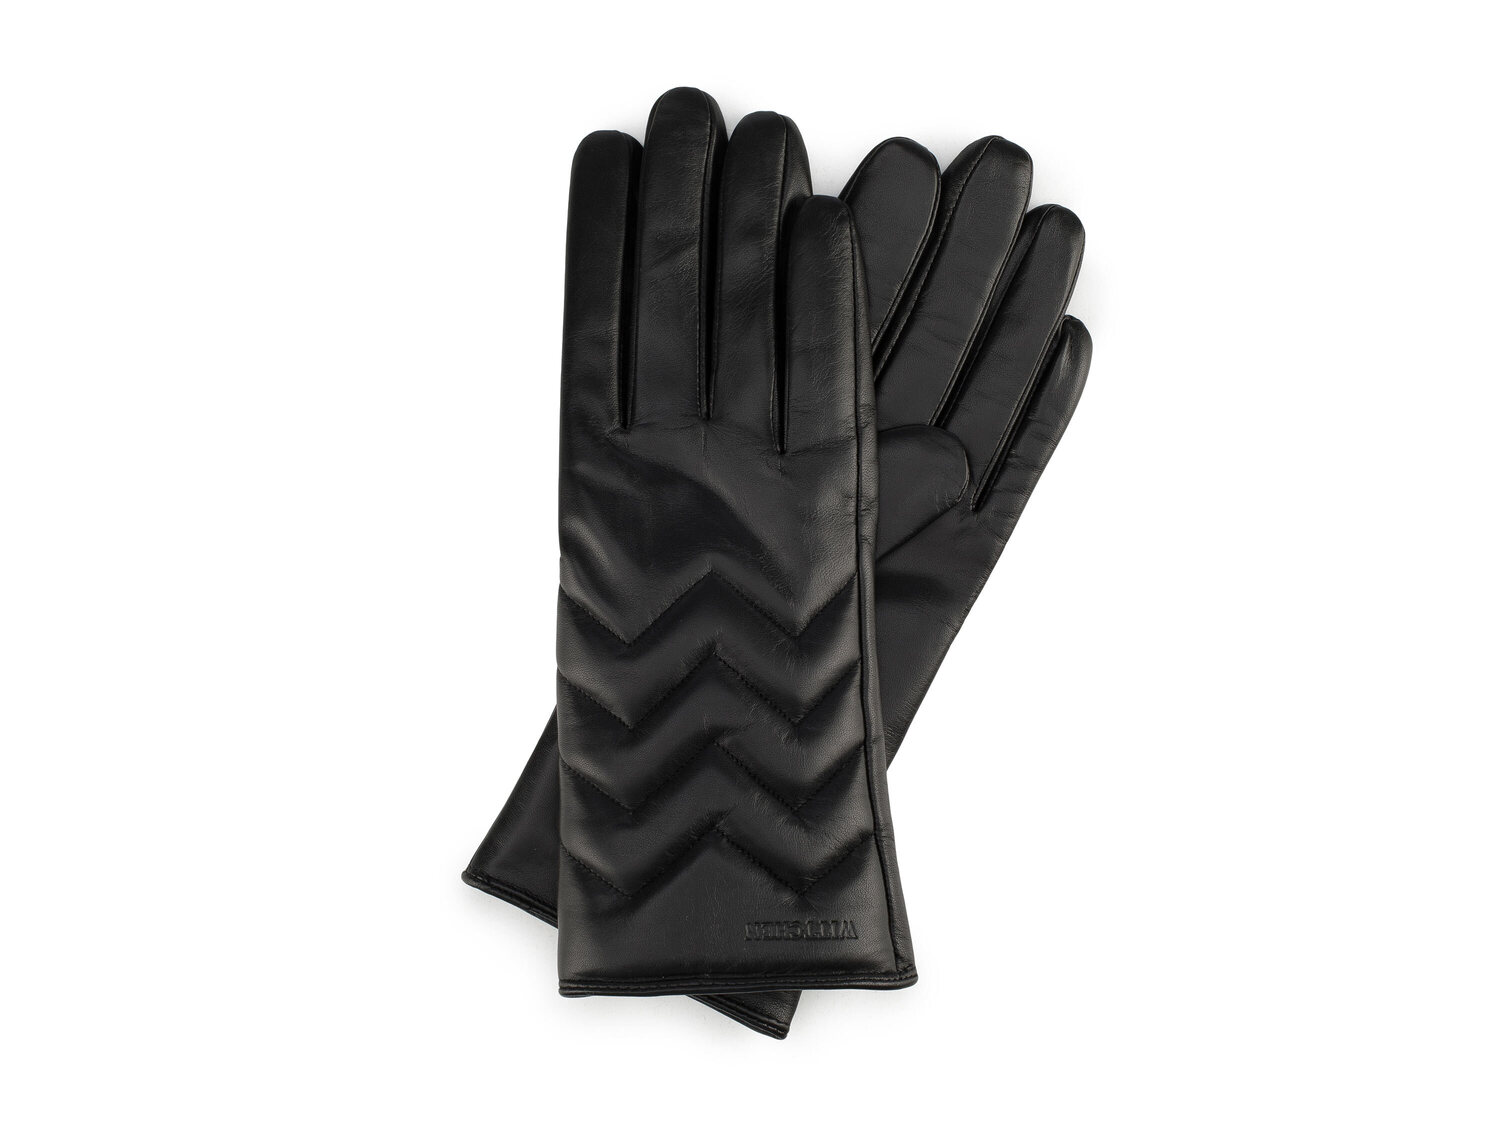 Rękawiczki z naturalnej włoskiej skóry Wittchen, cena 89,00 PLN 
damskie 
- materiał:&nbsp; ...